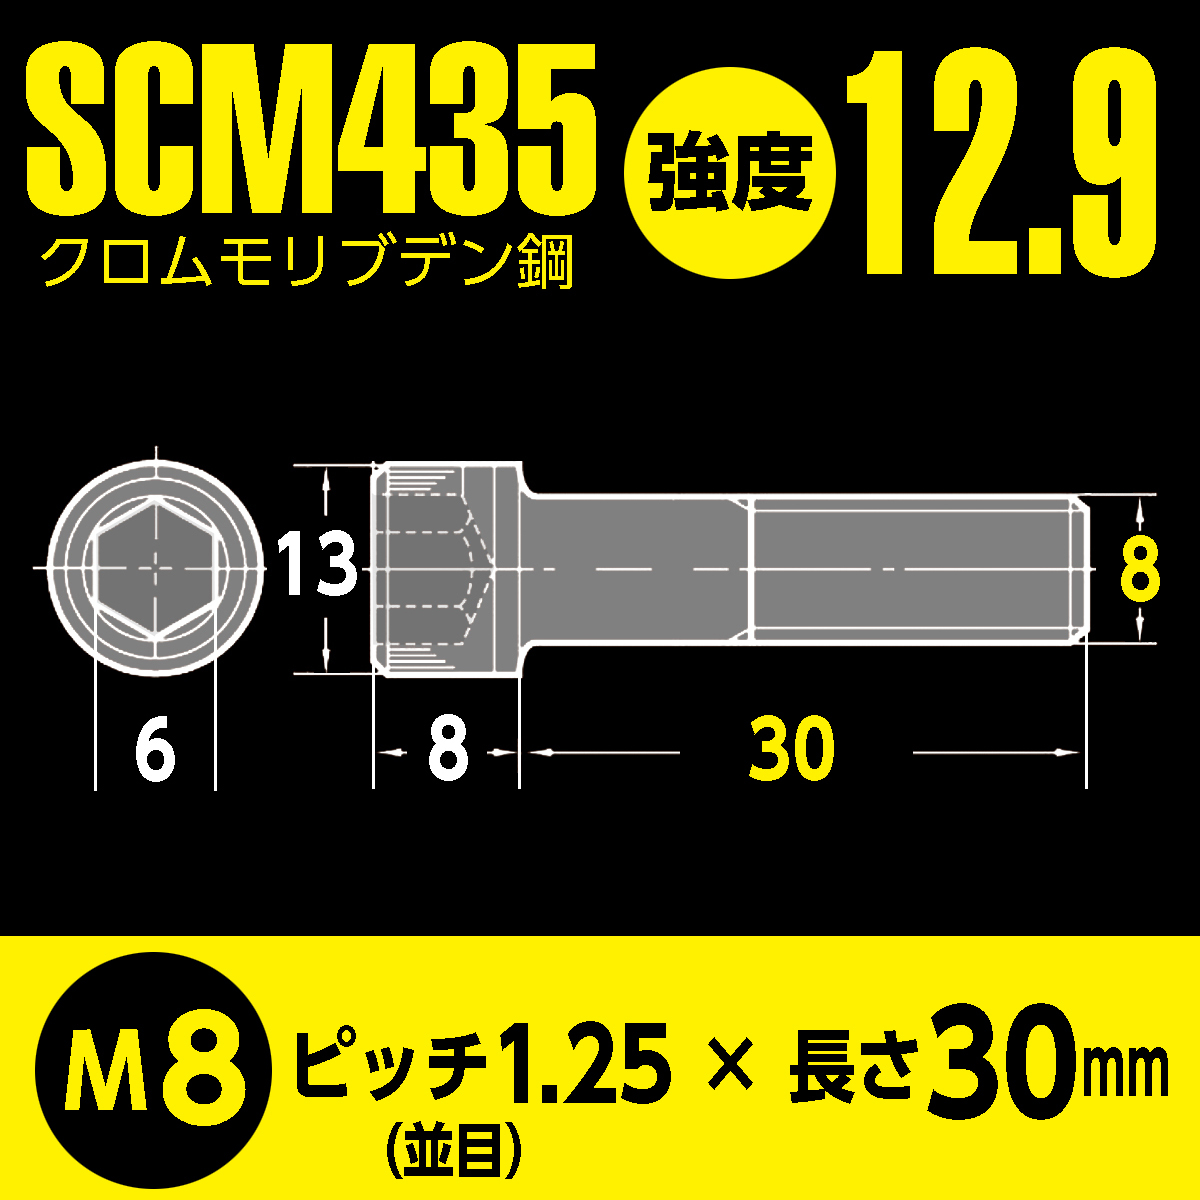 バイク用 鉄 SCM435／BFA特殊防錆コート 六角穴付 高強度 キャップボルト M8 x 長さ30mm 2本入 強度12.9 マットブラック超防錆加工_画像6